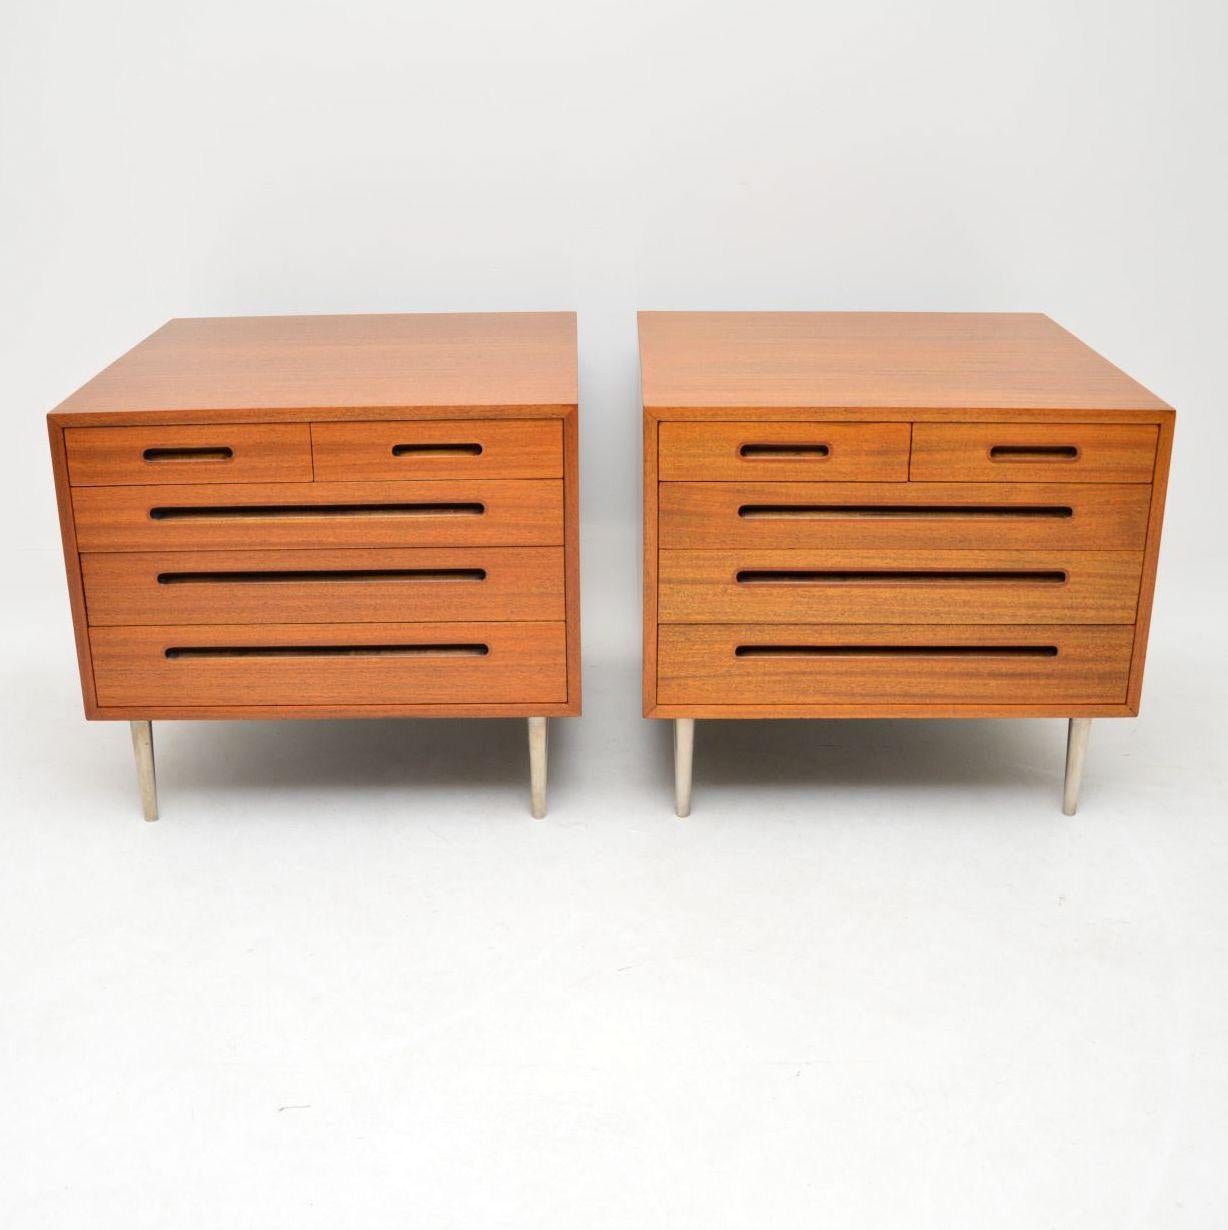 Ein prächtiges Paar Vintage-Truhen, die in den USA von Dunbar-Möbeln hergestellt wurden und von Edward Wormley entworfen wurden.

Edward Wormley war einer der führenden Pioniere des modernen Designs der Jahrhundertmitte in Amerika. Seine Entwürfe